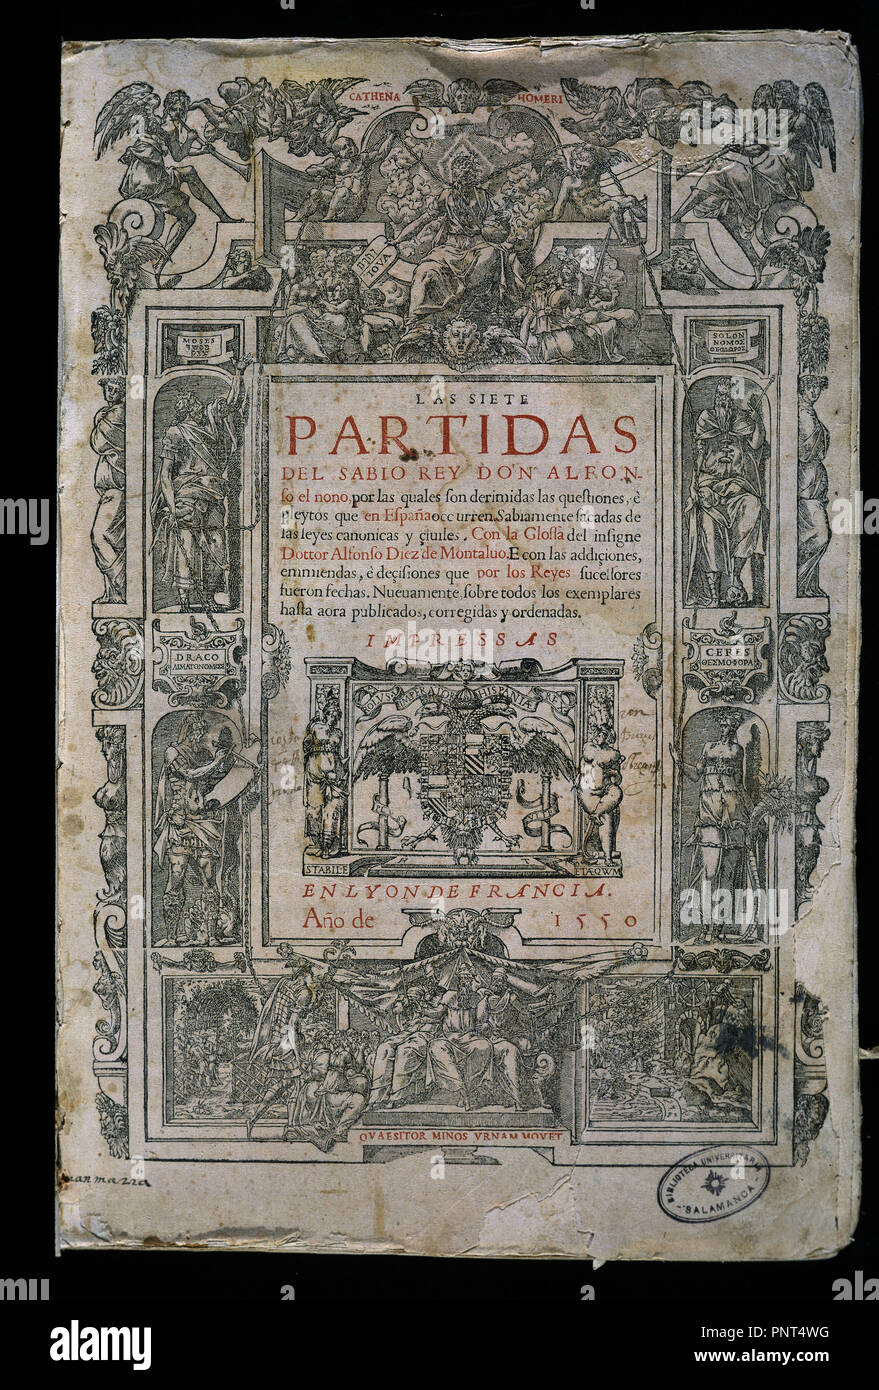 LAS SIETE PARTIDAS-IMPRESAS EN LYON EN 1550-PORTADA. Author: Alfonso X of  Castile. Location: UNIVERSIDAD BIBLIOTECA. SALAMANCA. SPAIN Stock Photo -  Alamy